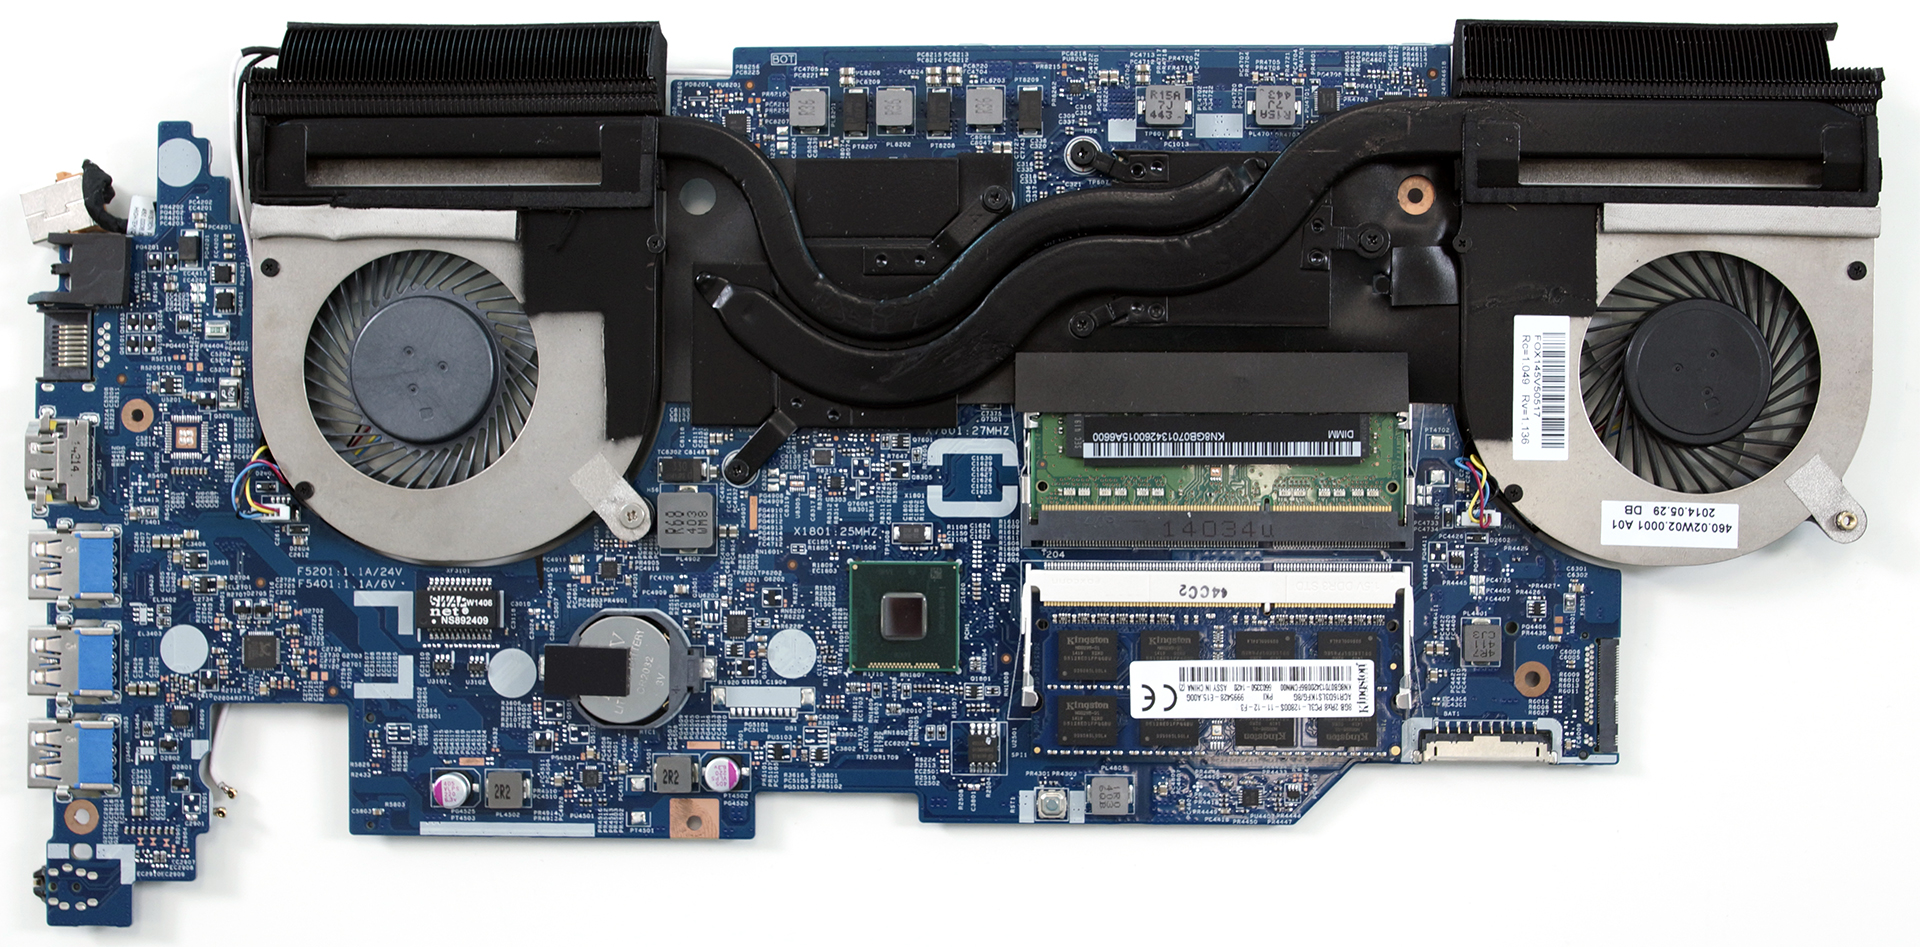 Inside Acer Aspire V15 Nitro Black Edition (VN7-591G, GTX 960M) - internal photos and upgrade options | LaptopMedia.com